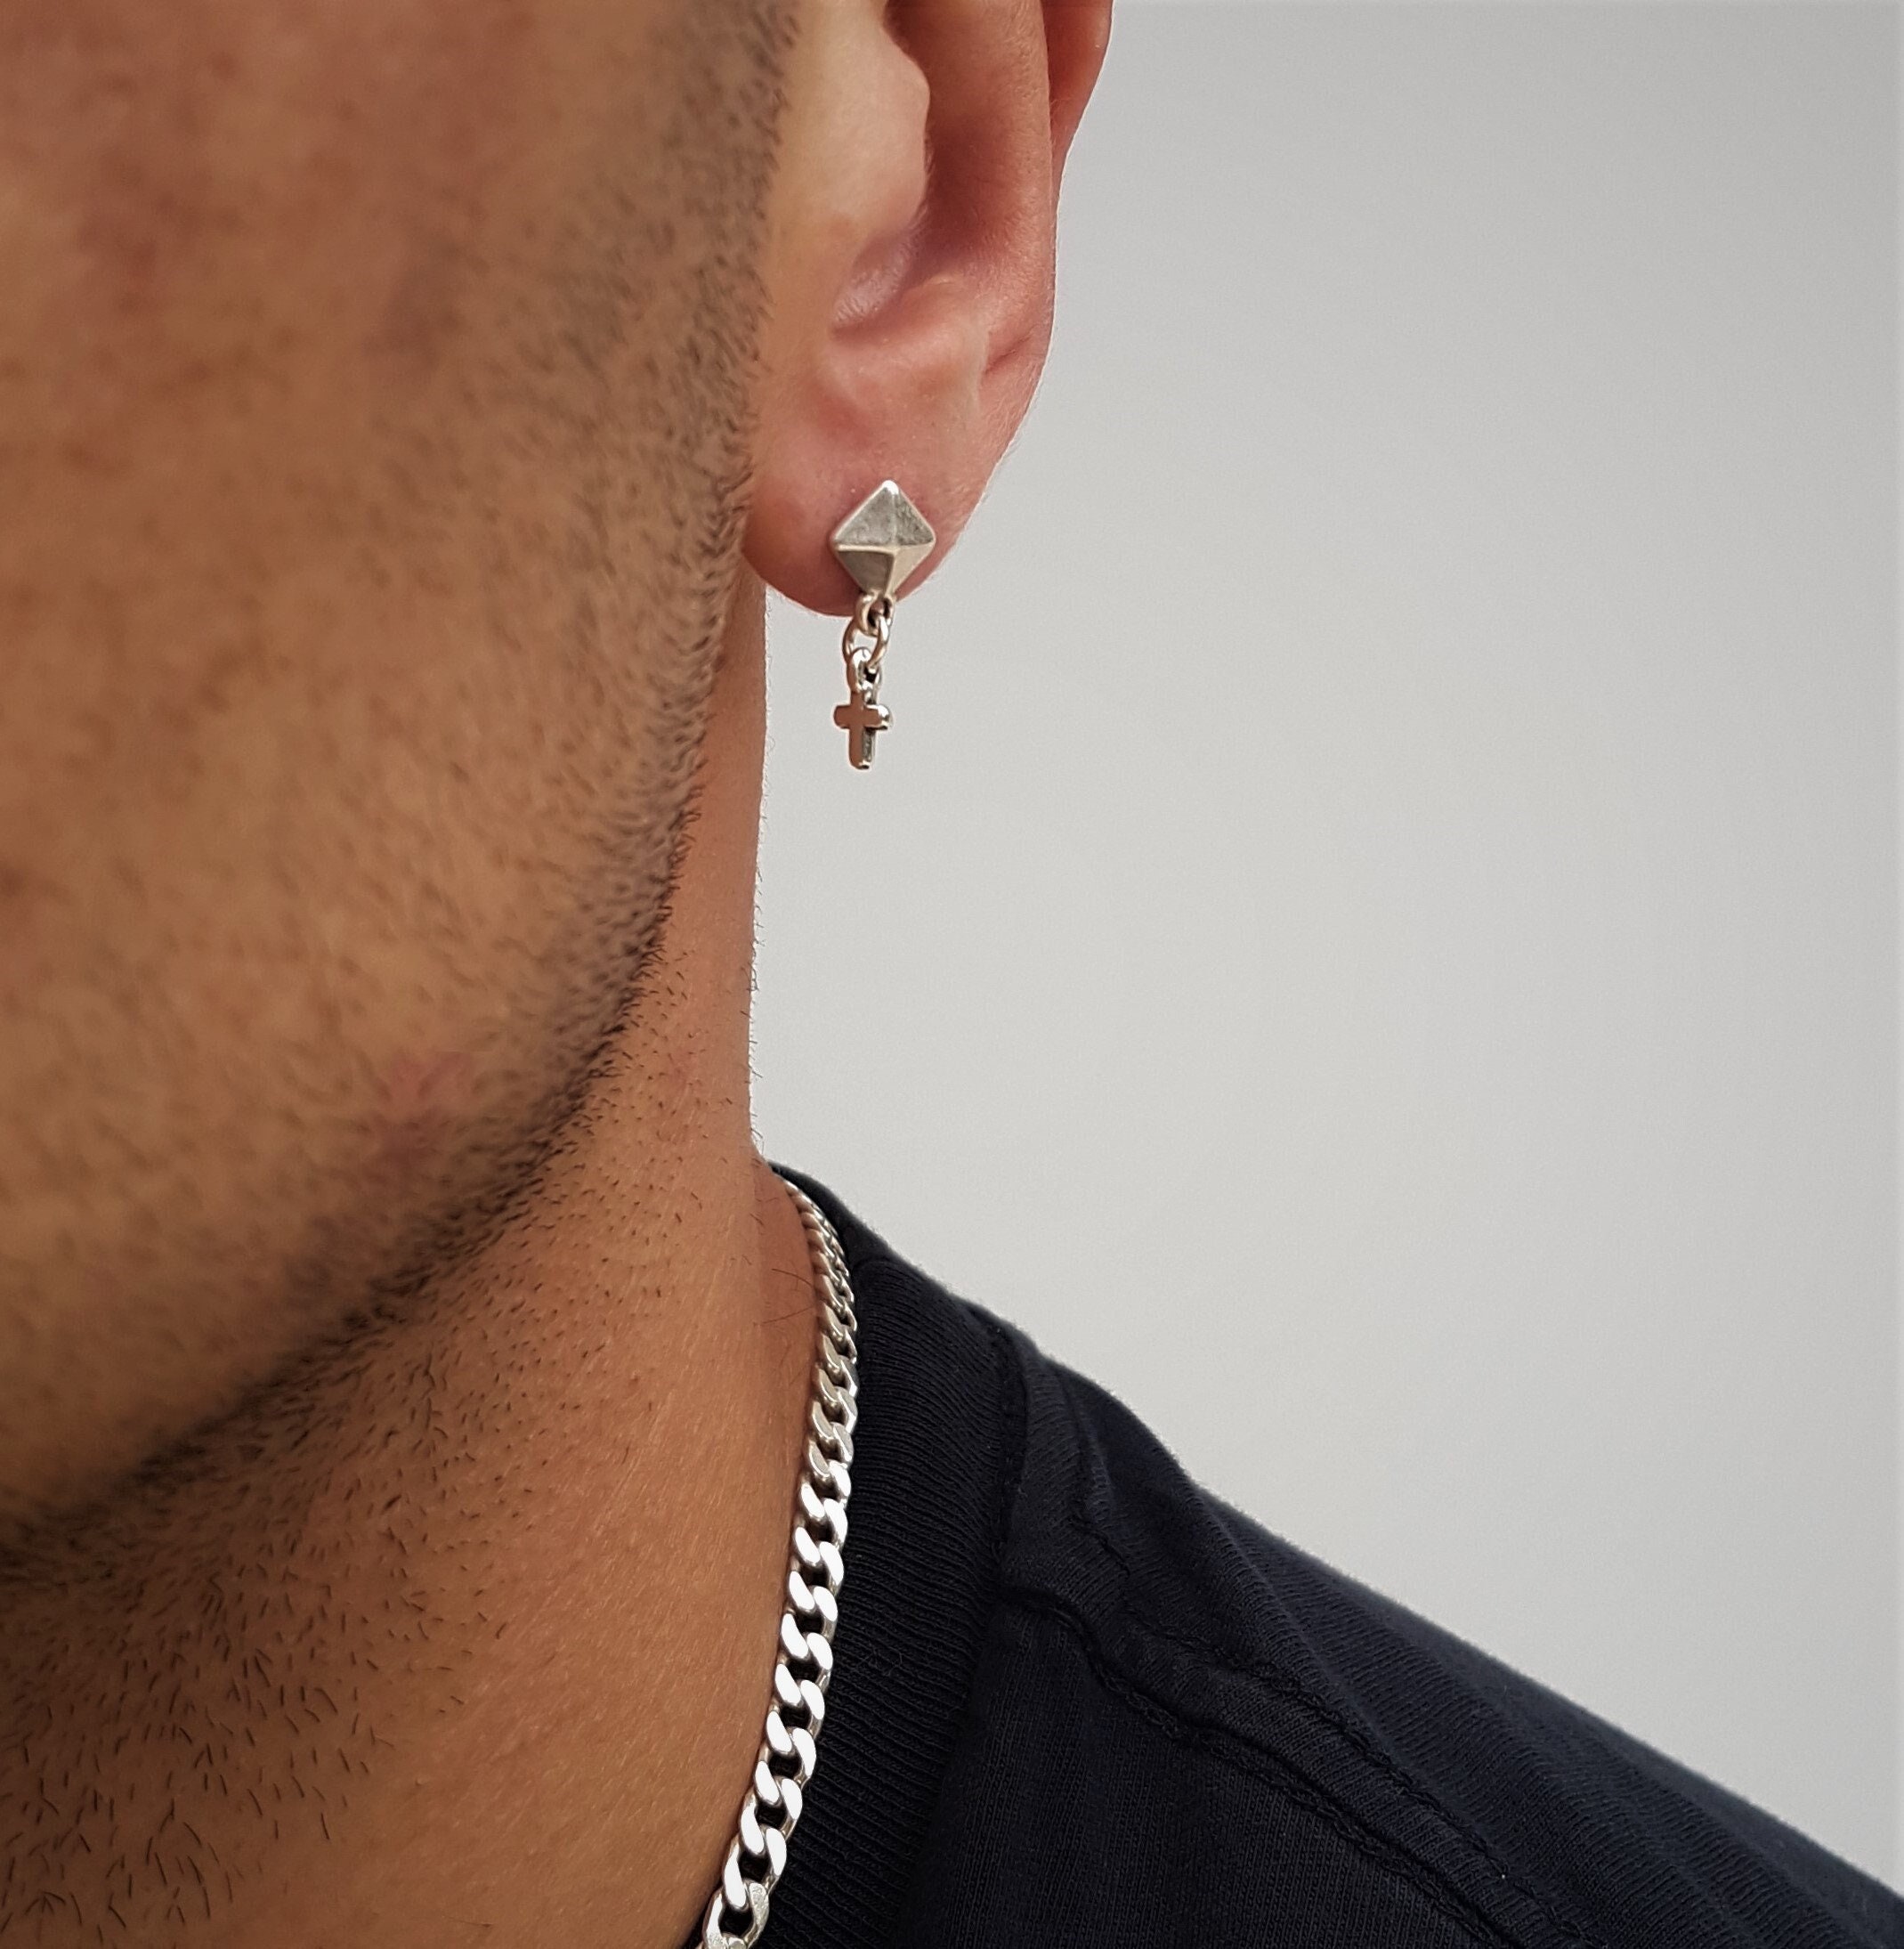 Buyless Fashion Unisex None Piercing Cuff Earrings Sterling Silver  Cartilage Ear Clips For Men-Women - Walmart.com